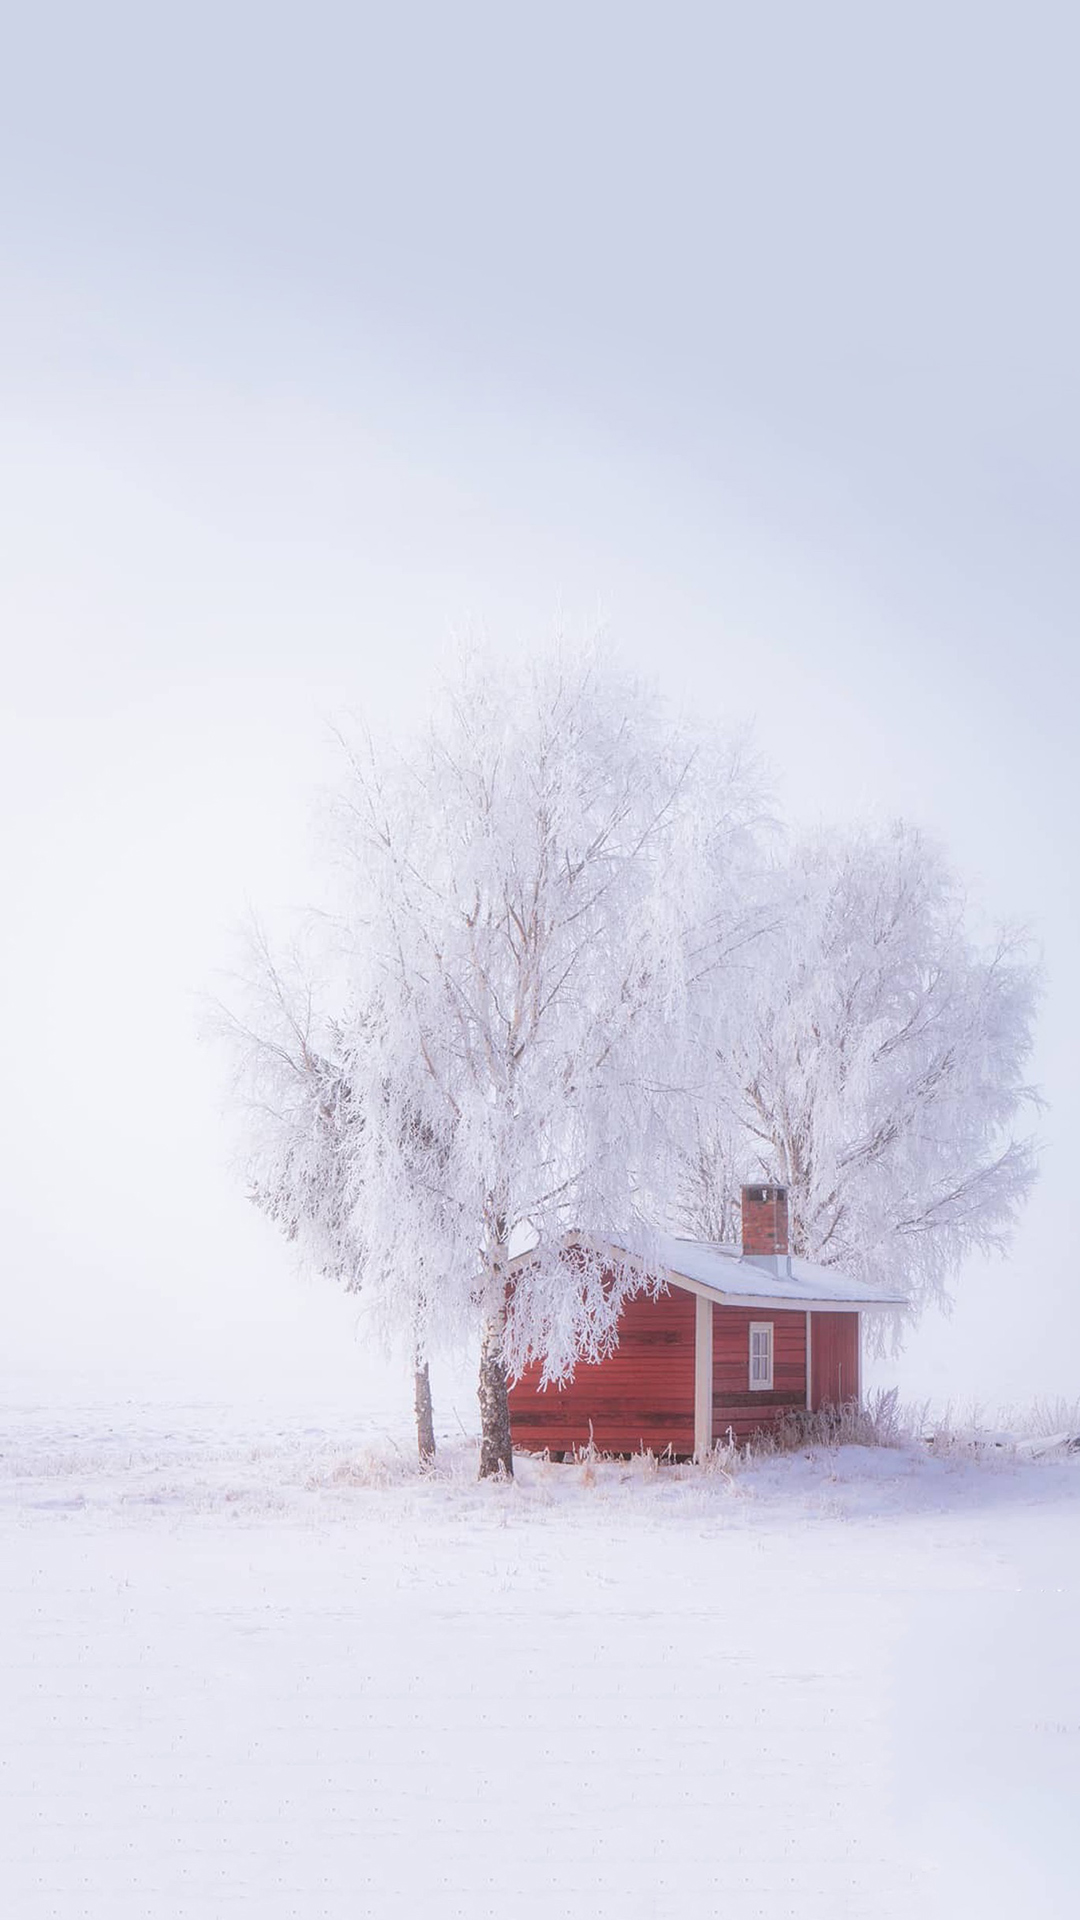 冬季雪景唯美风景手机壁纸图片